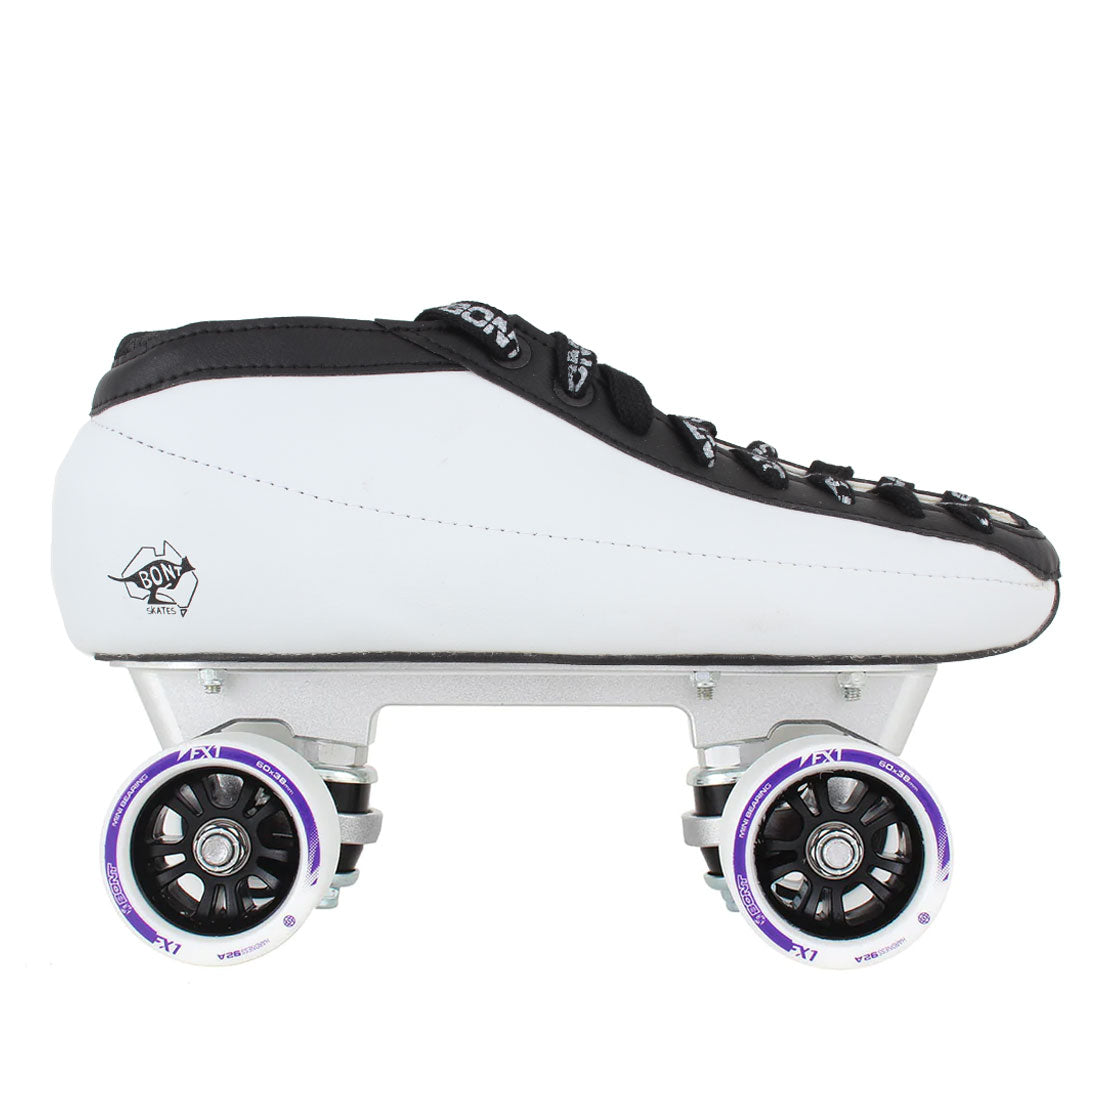 Bont Quad Hybrid V2 Tracer FX1 / Bont 7 Roller Skates